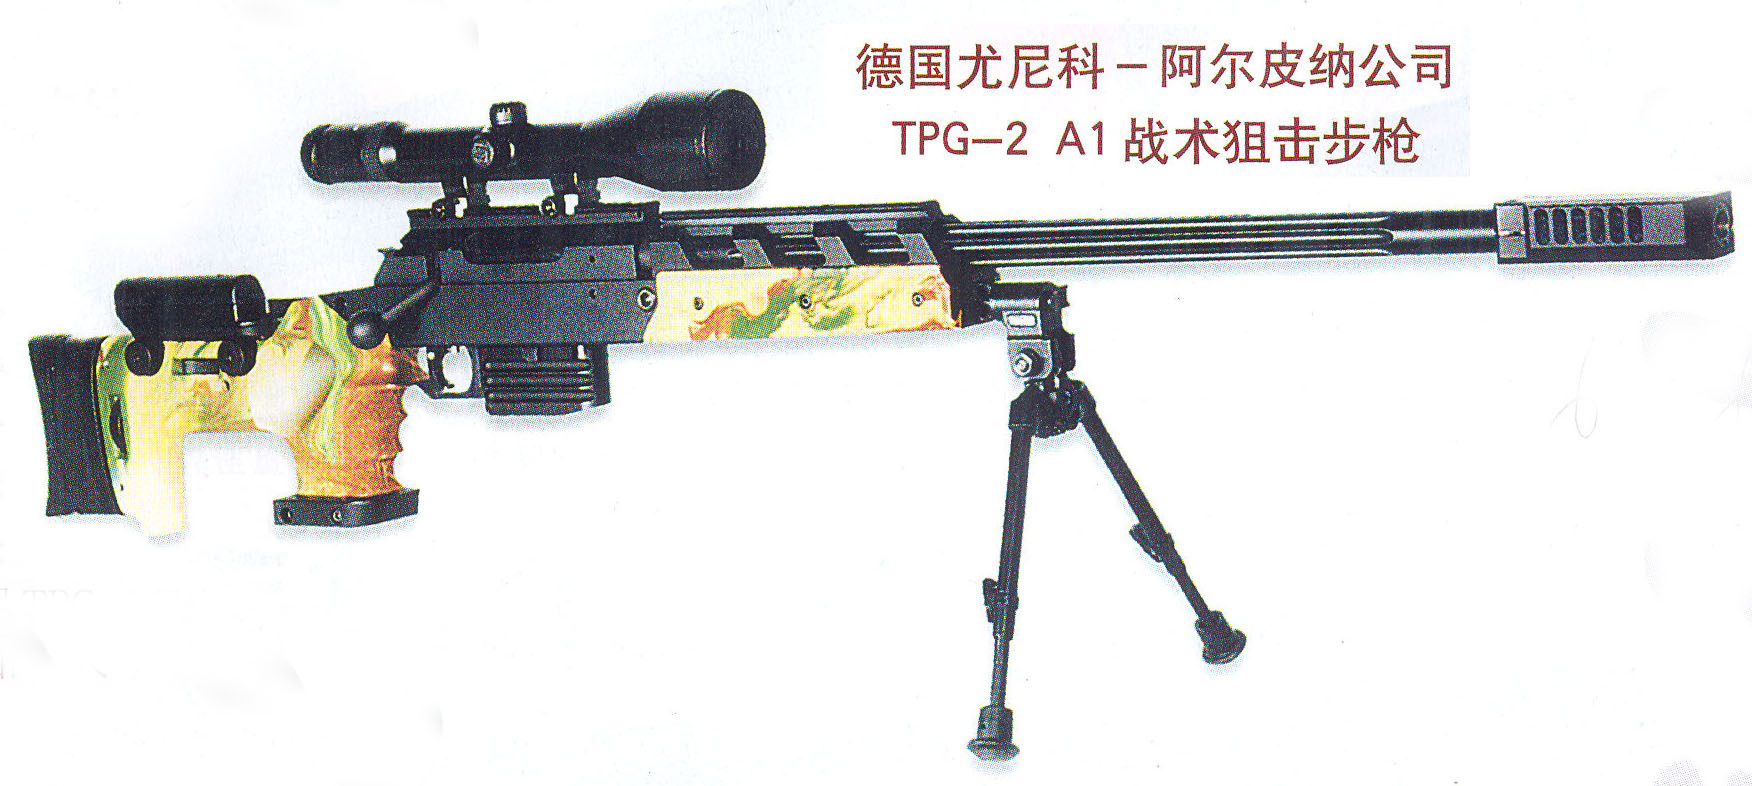 TPG-2 A1